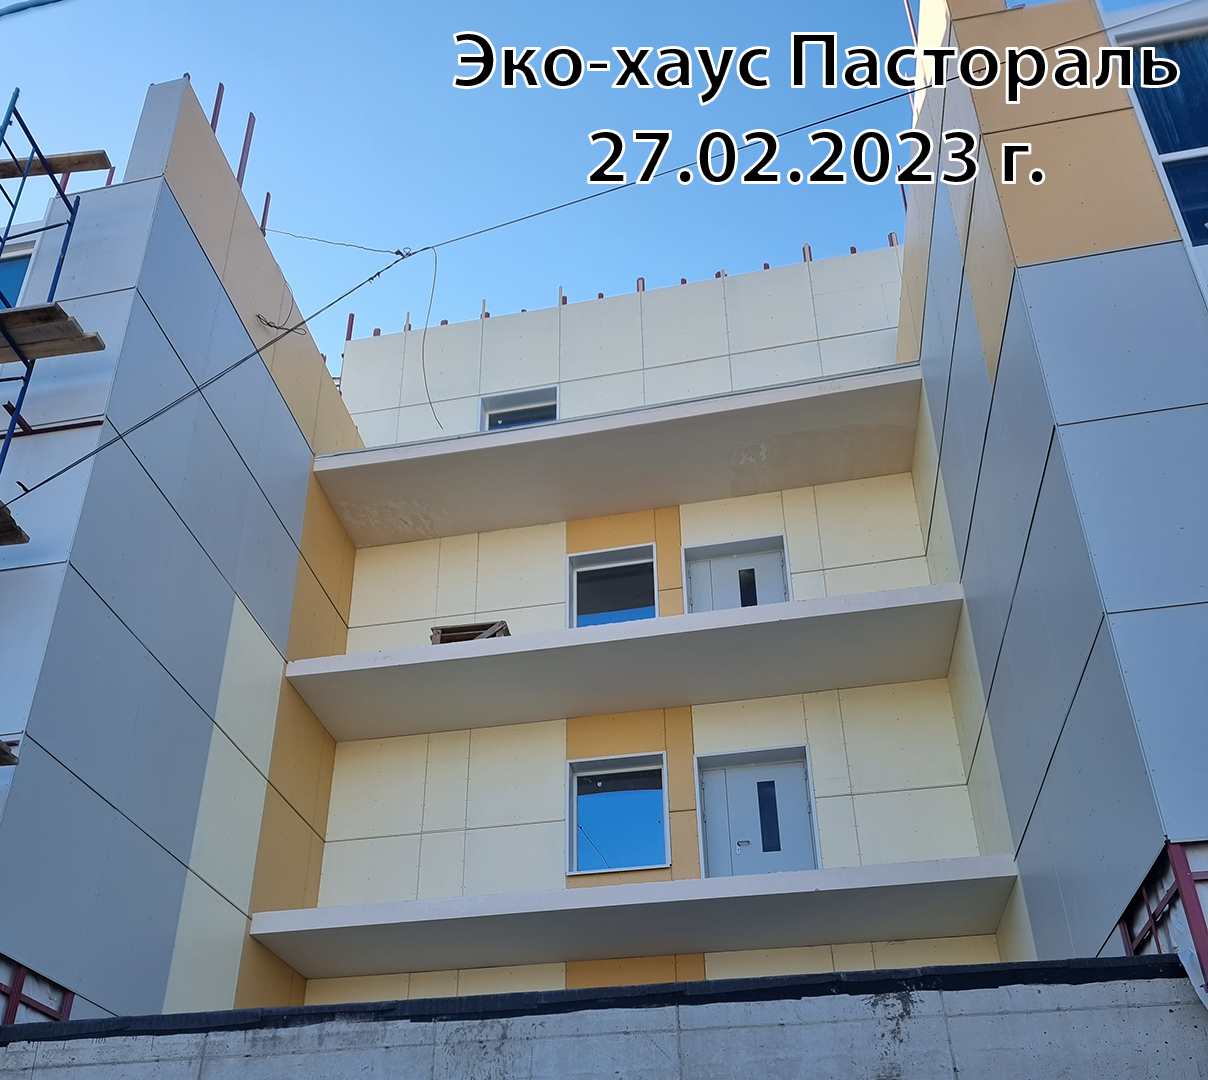 Жилой комплекс Эко-хаус Пастораль, Февраль, 2023, фото №2